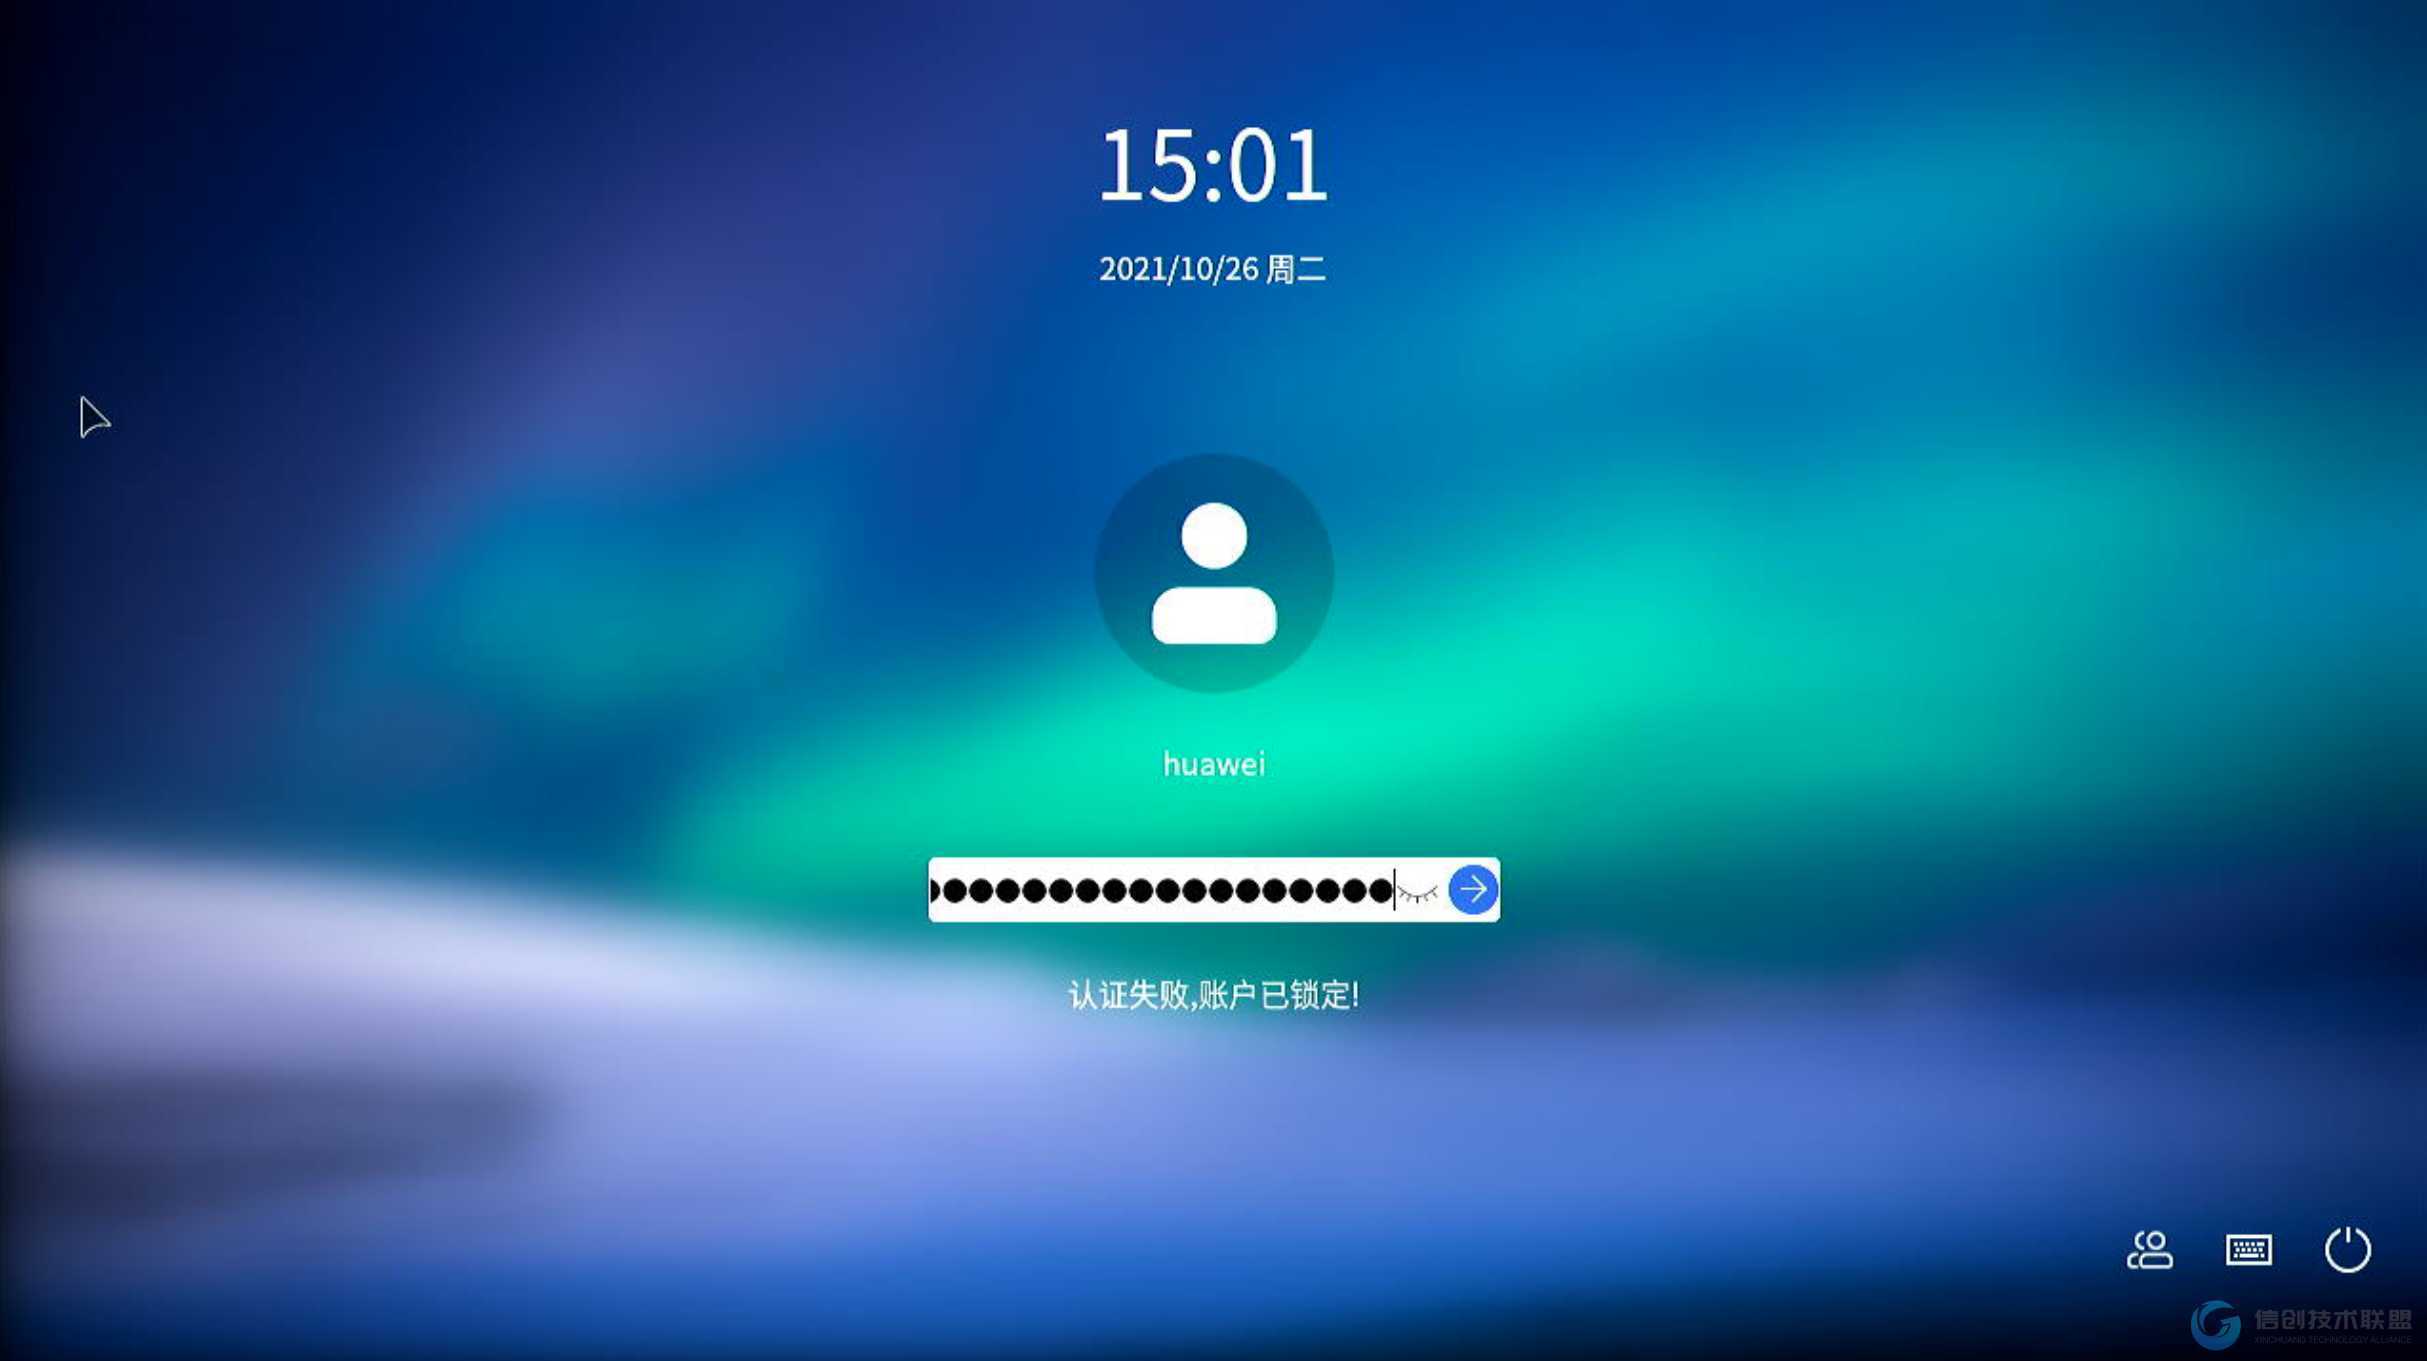 华为手机为什么被锁定
:华为麒麟990版本账户被锁定问题